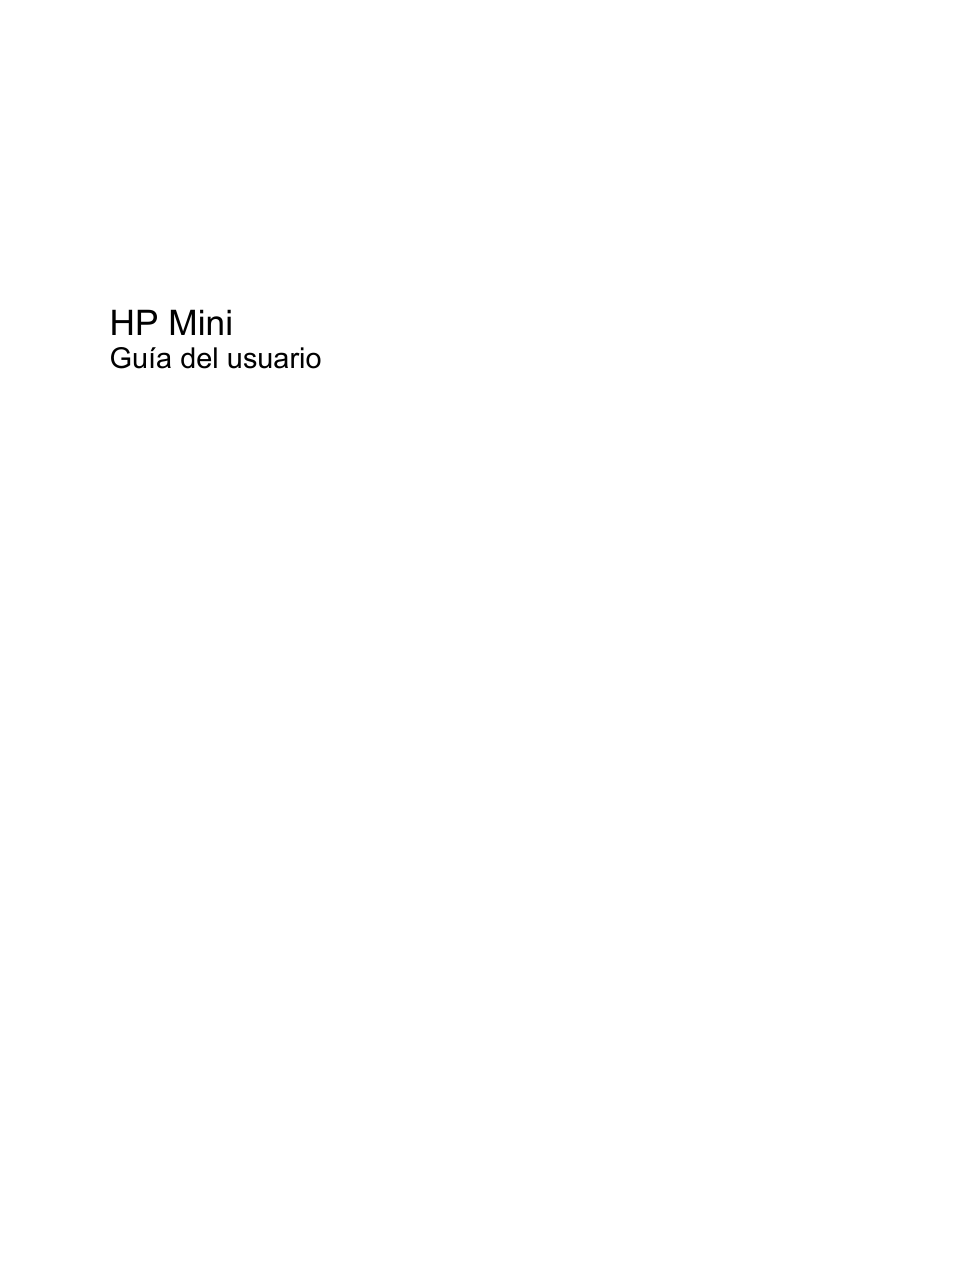 HP PC miniatura HP 5103 Manual del usuario | Páginas: 137